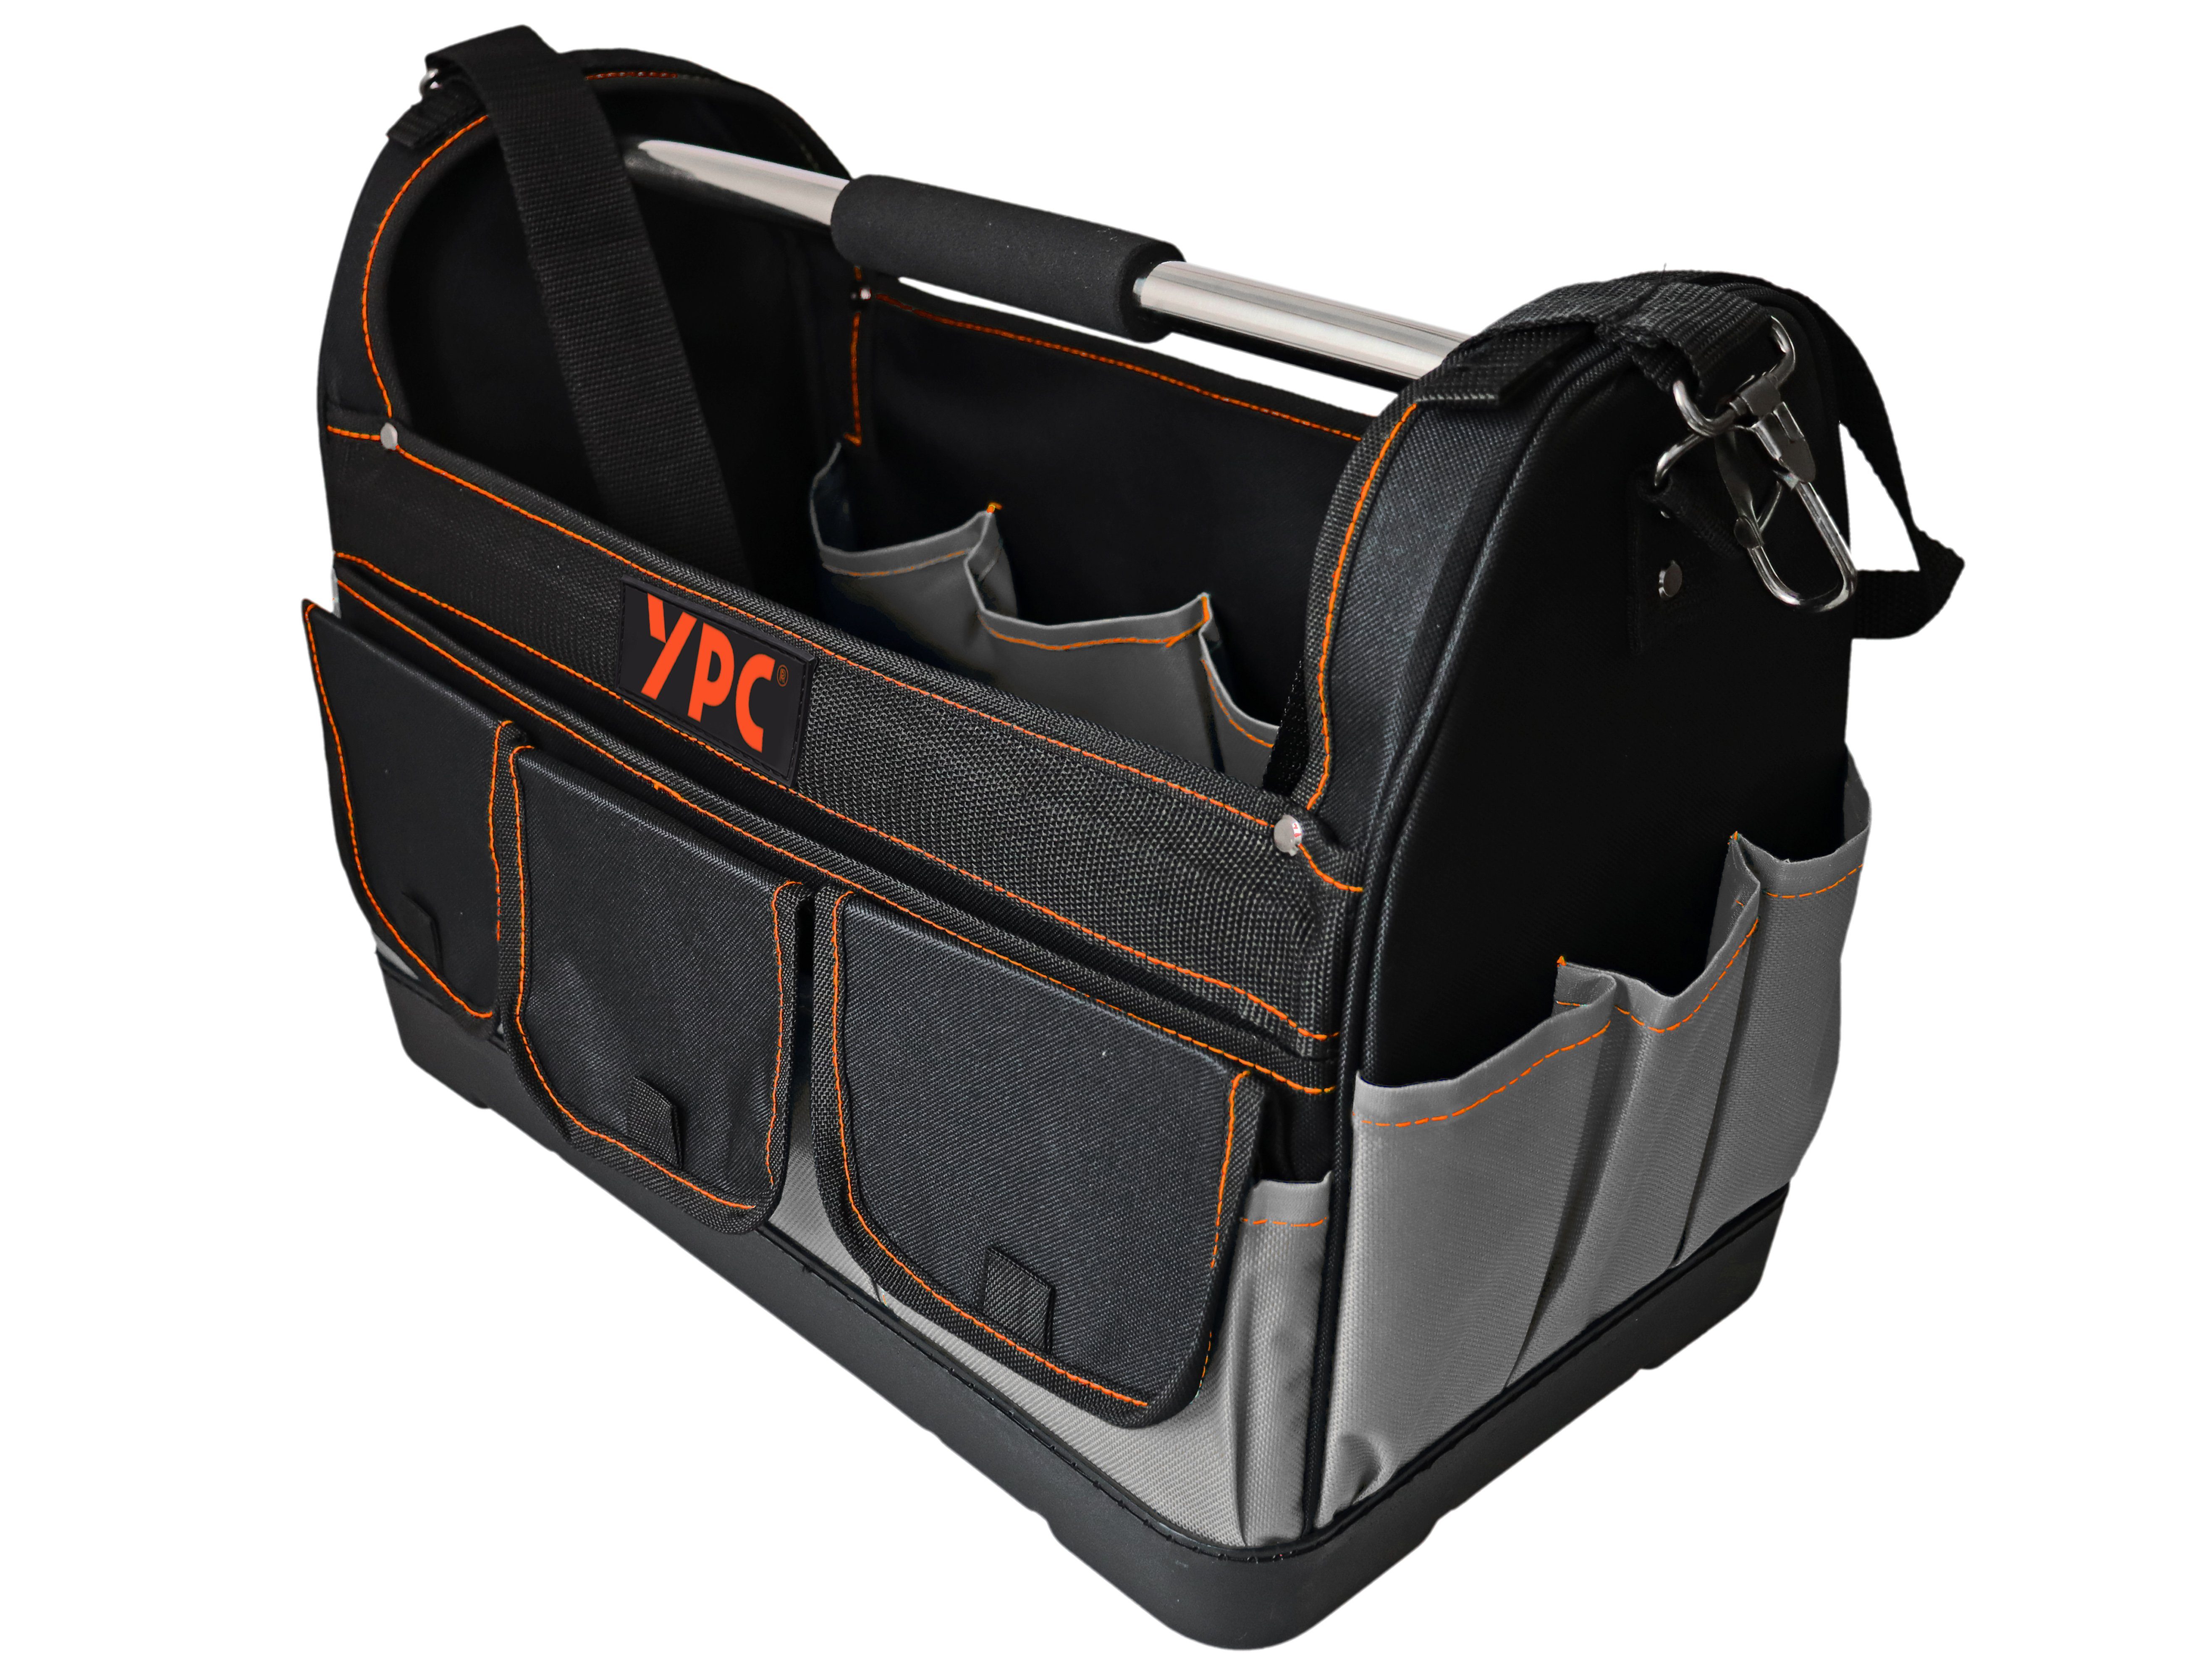 YPC Werkzeugtasche "Pioneer" Werkzeugkorb XXL, offene Werkzeugtasche mit Metallgriff, 45x35x23cm, 20 kg Tragkraft, Tragetasche für Werkzeug mit Haltern, Fächern und Einschüben Grau